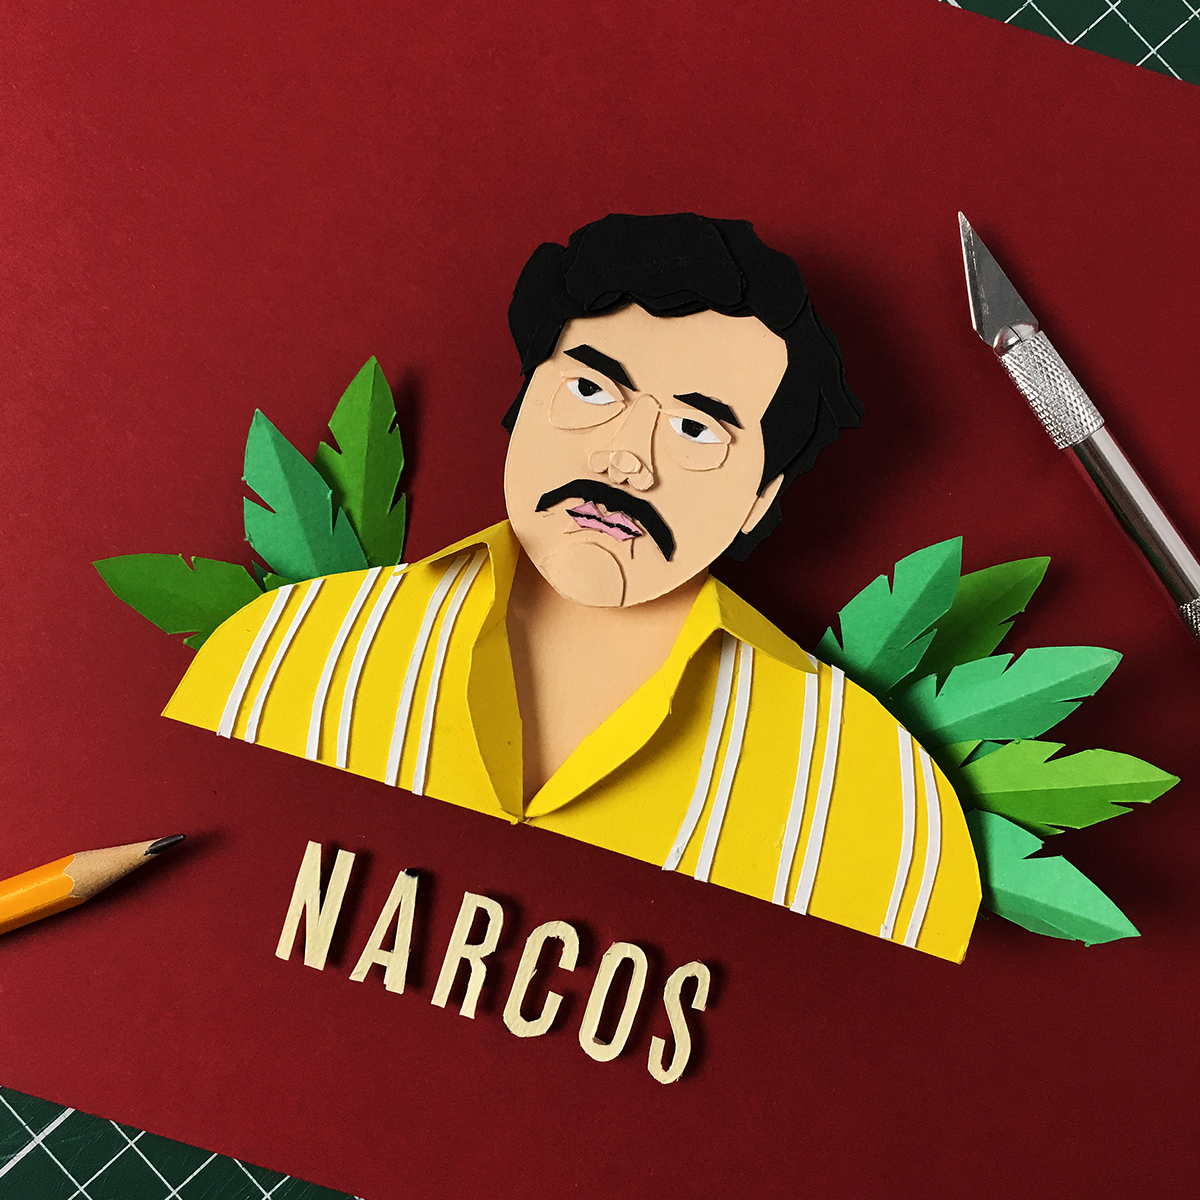 papercut narcos Pablo Escobar Netflix Character